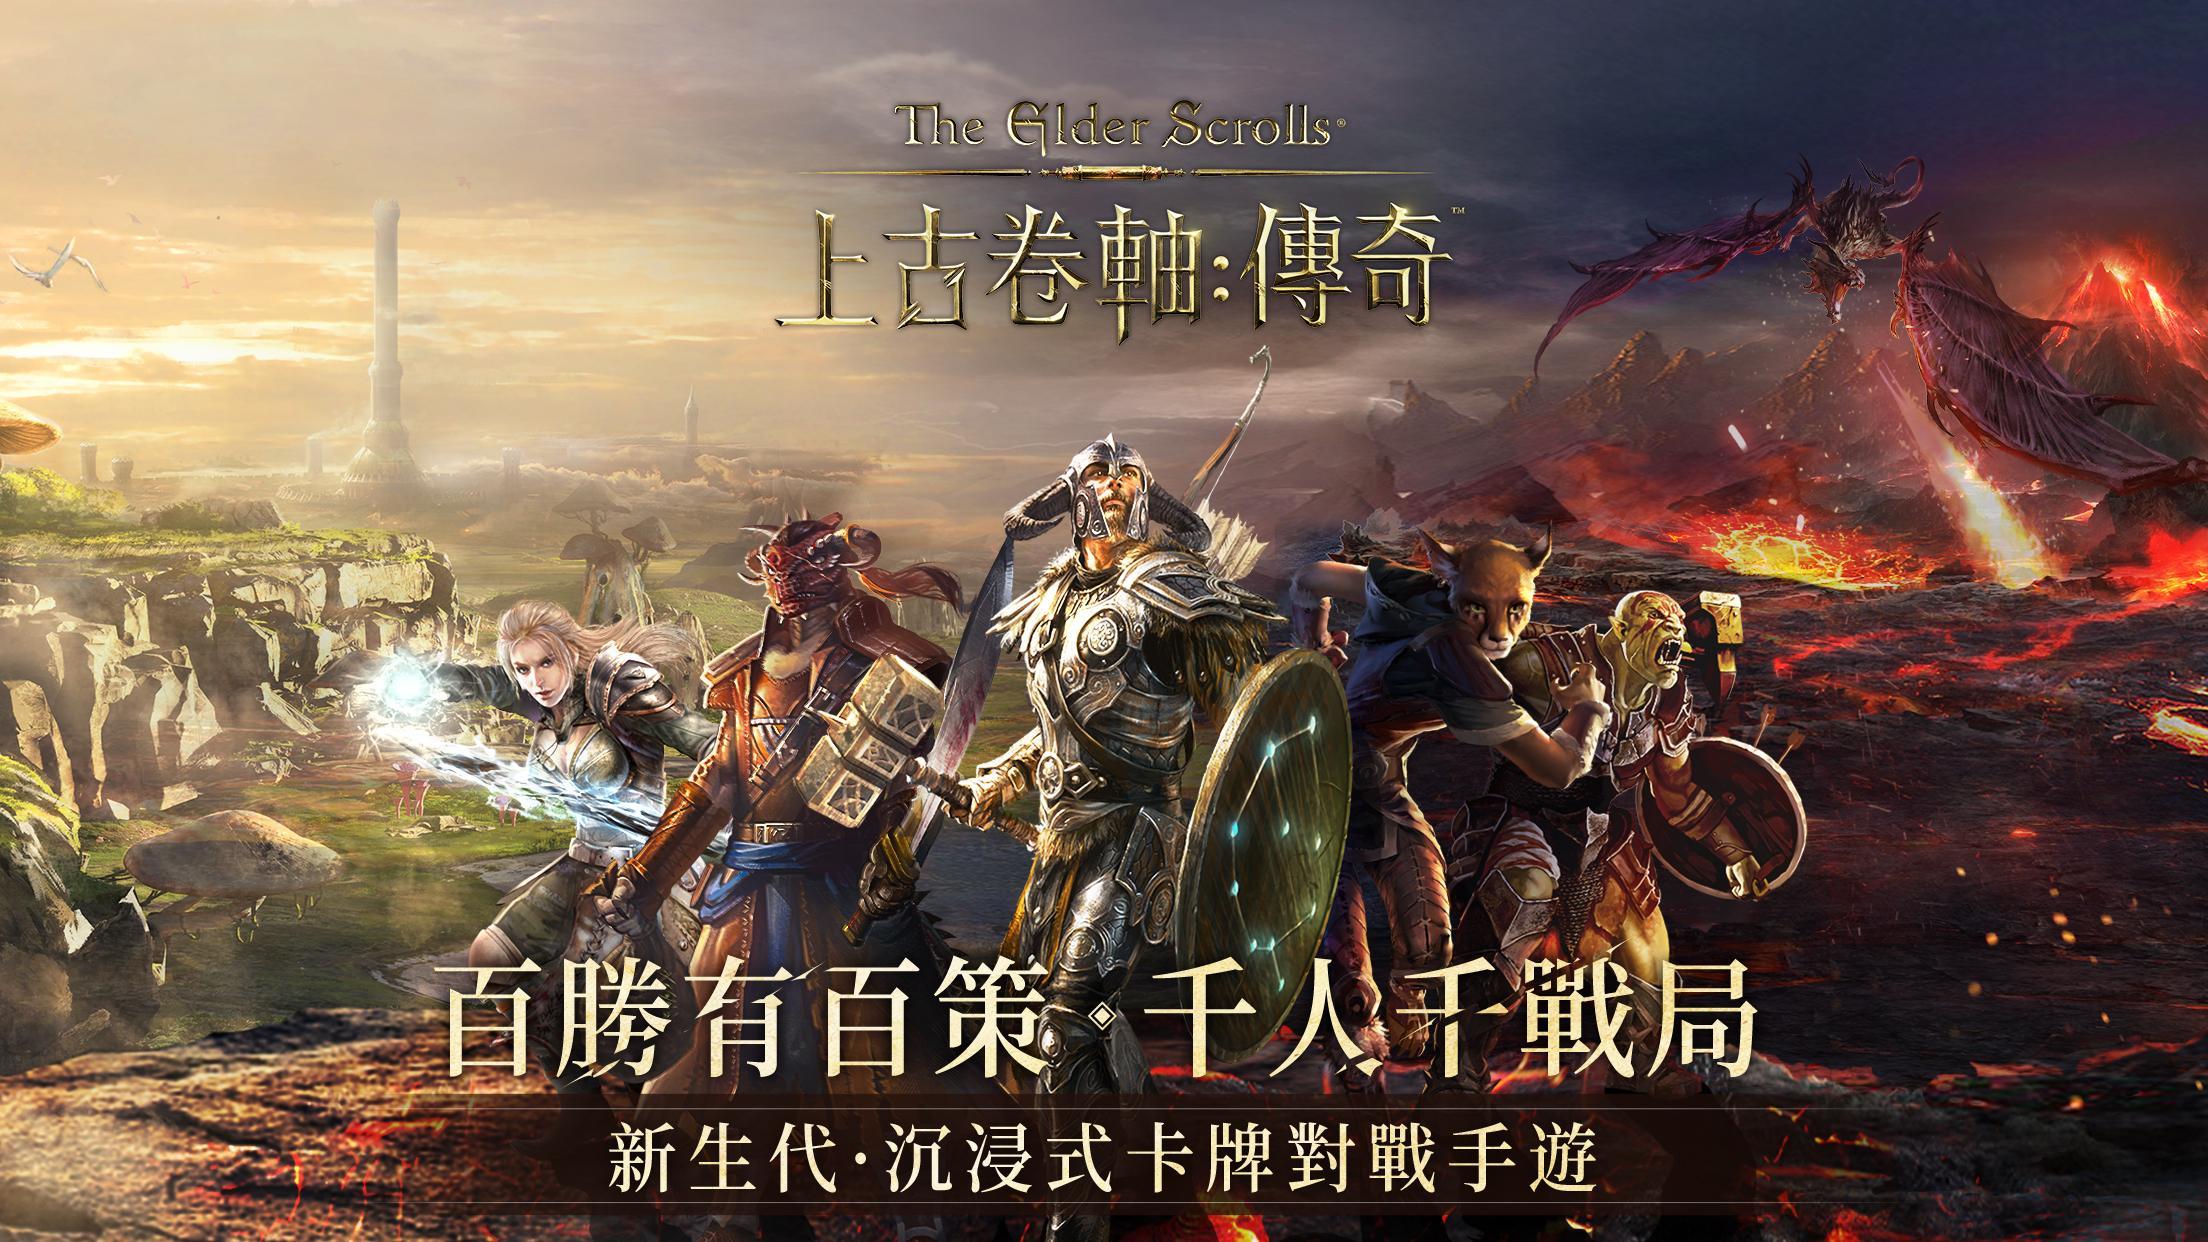 Screenshot 1 of The Elder Scrolls: Huyền thoại Châu Á 1.2.1